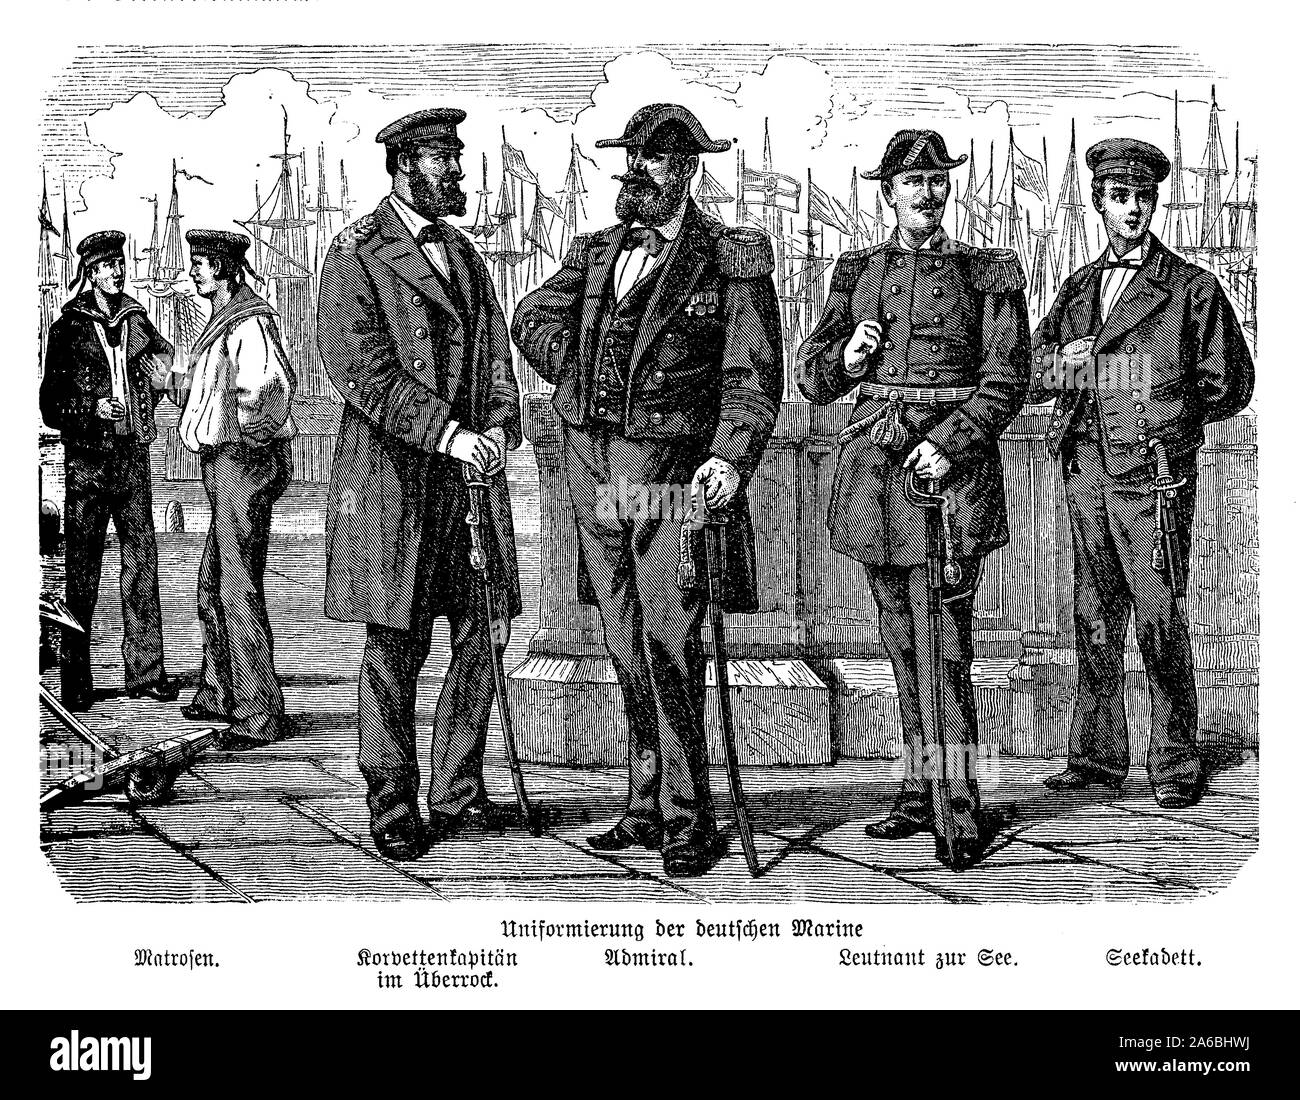 Gravure allemande avec les uniformes de la Marine impériale allemande  seaman et officiers au 19ème siècle, à partir de la gauche : marins,  commandant de la corvette avec manteau, l'amiral, le lieutenant